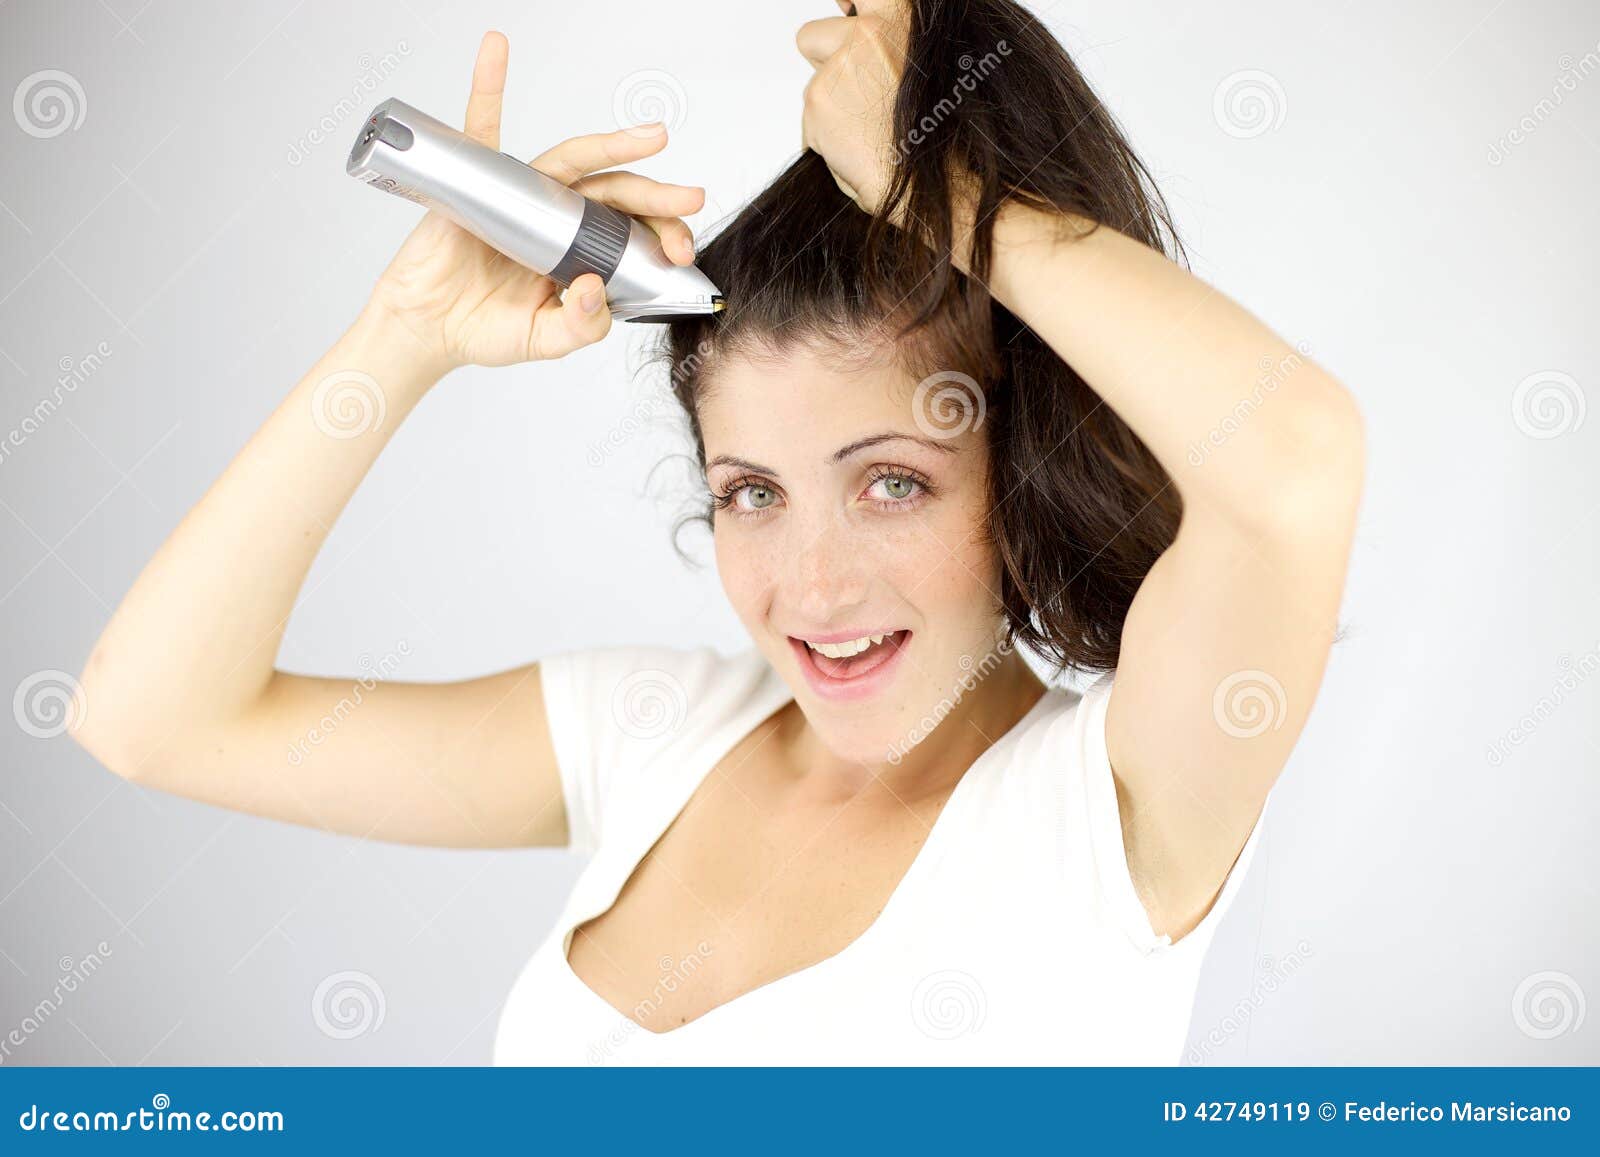 一位女士模特拿着吹风机吹着自己的头发美妆时尚素材设计